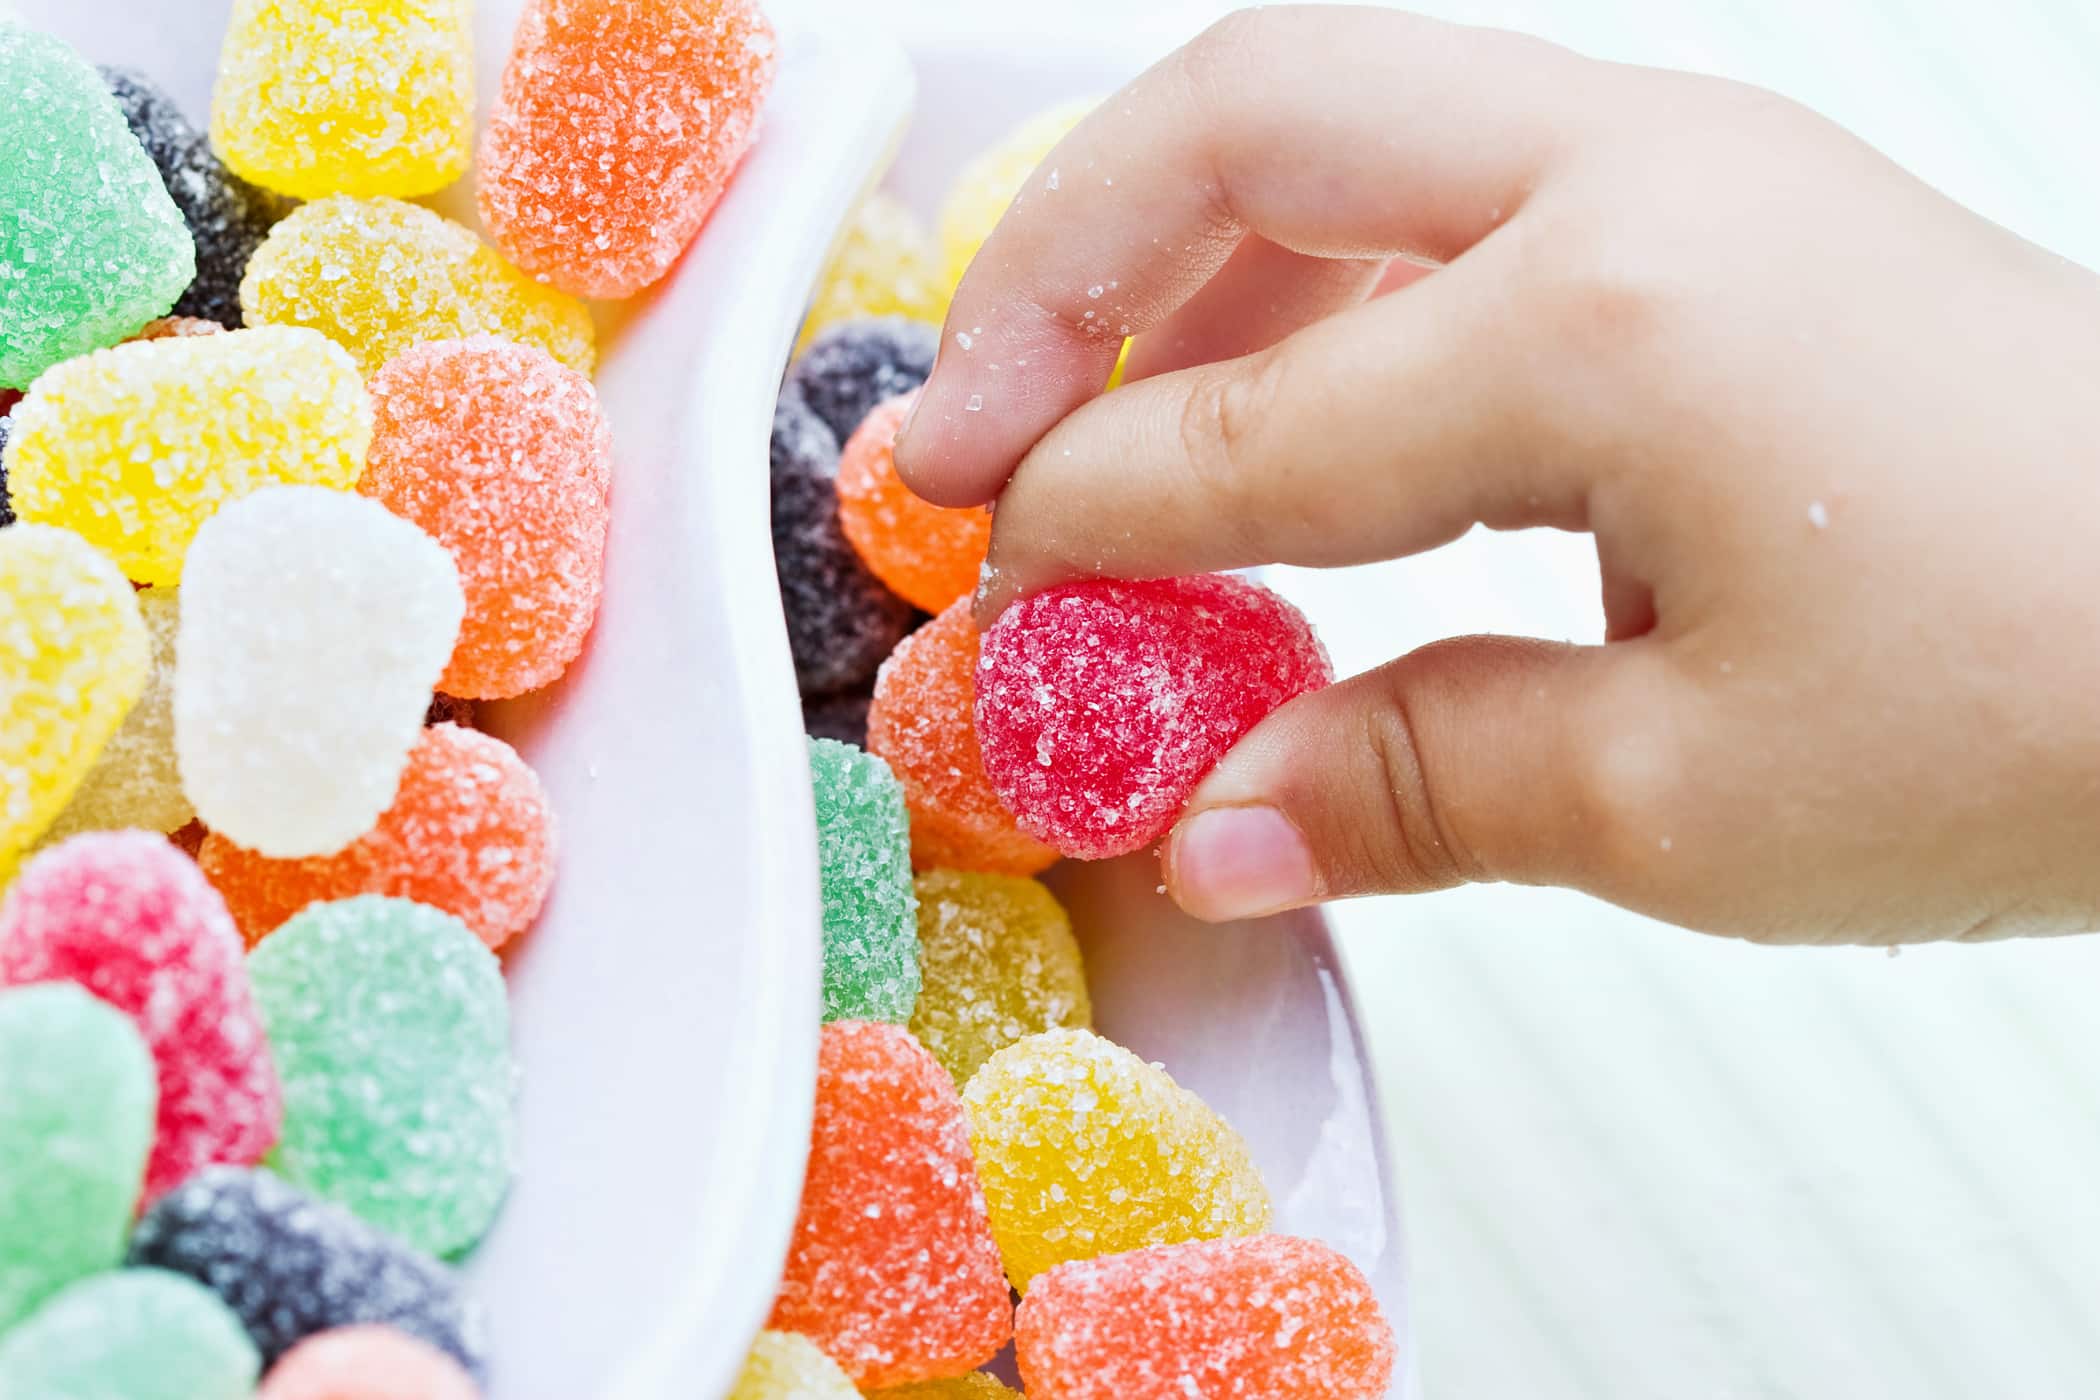 Šećer nije uvijek loš za rast i razvoj djece, sve dok roditelji znaju granicu